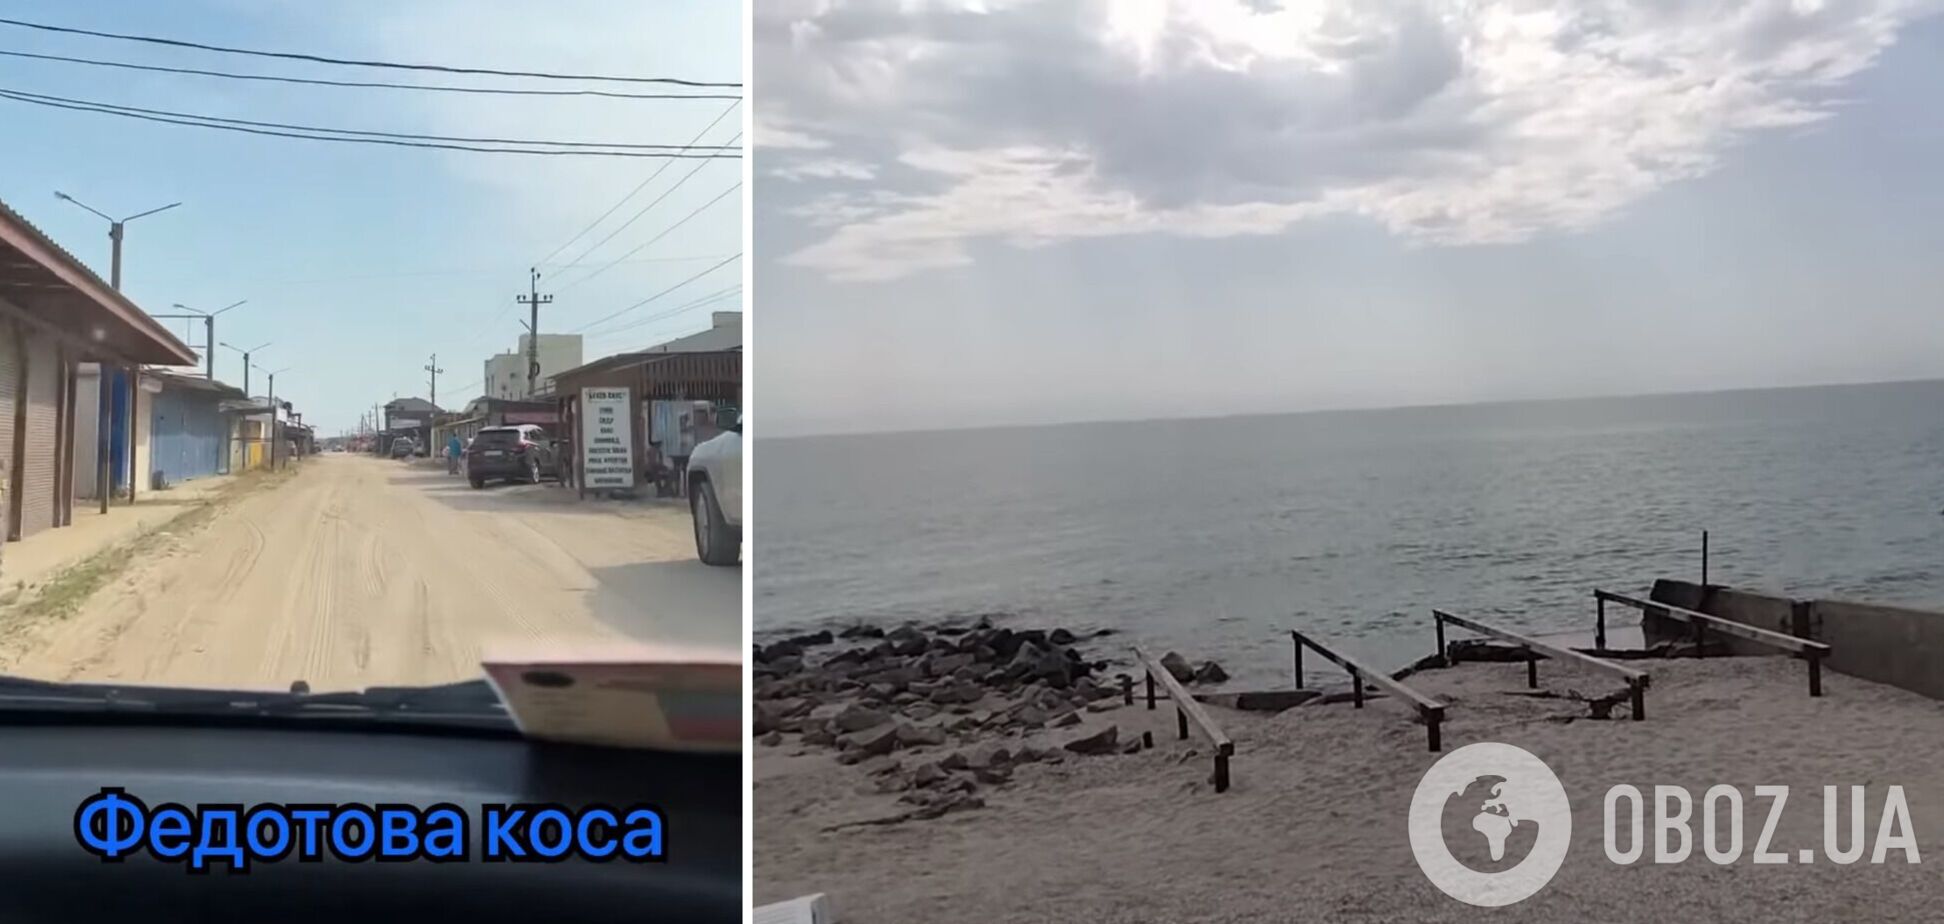 'Держат народ за лоха': россияне рассказали о туристическом буме в Кирилловке, но кадры с пляжей выдали всю правду. Видео